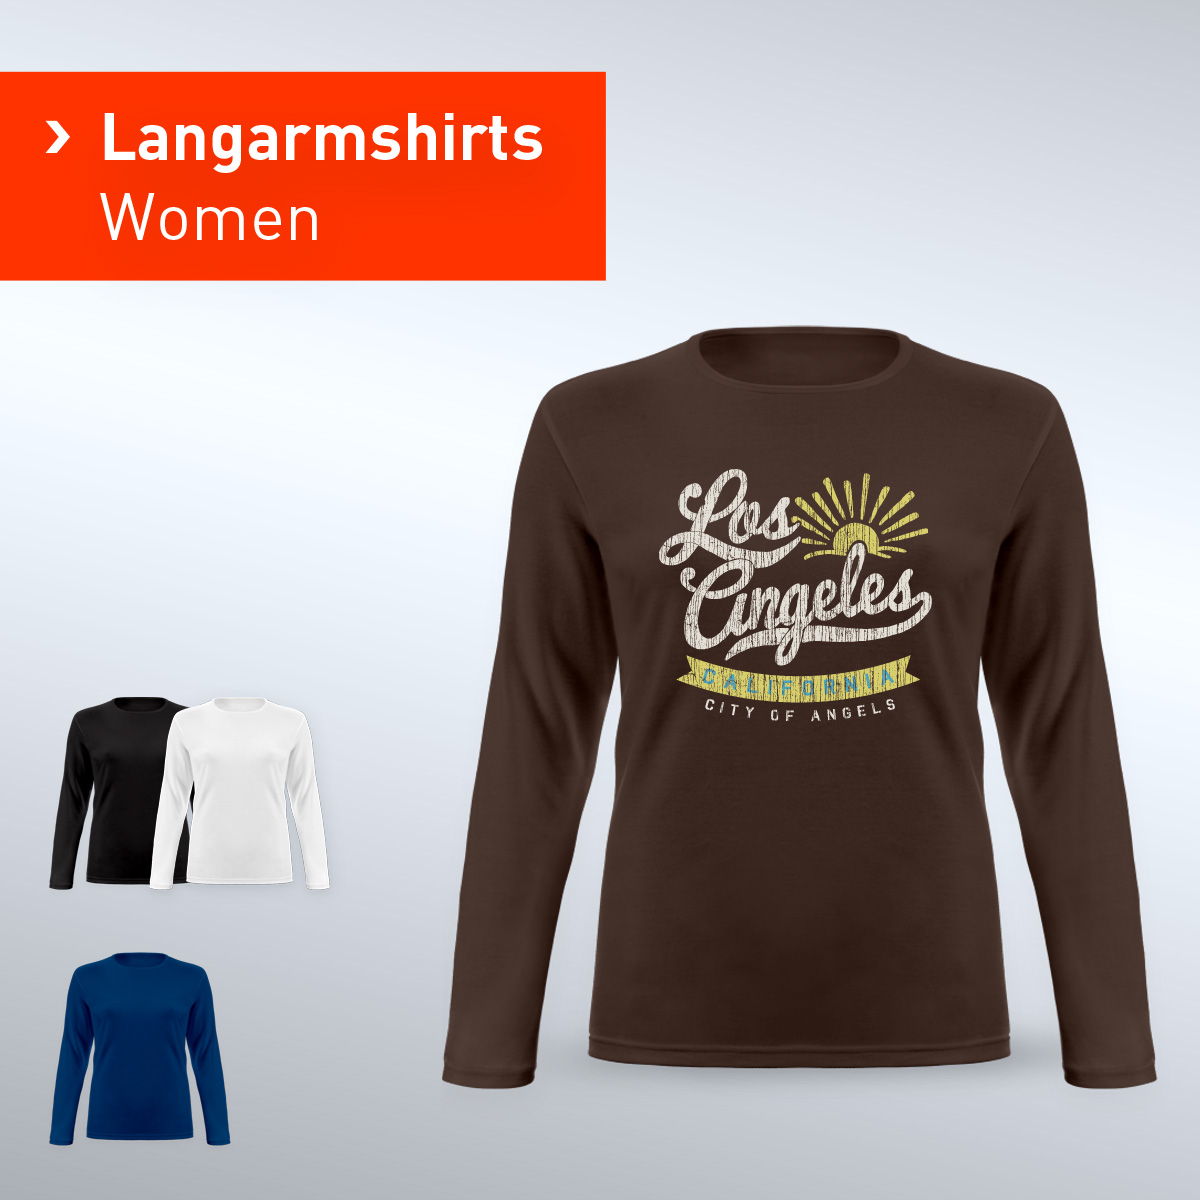 Langarmshirts Women